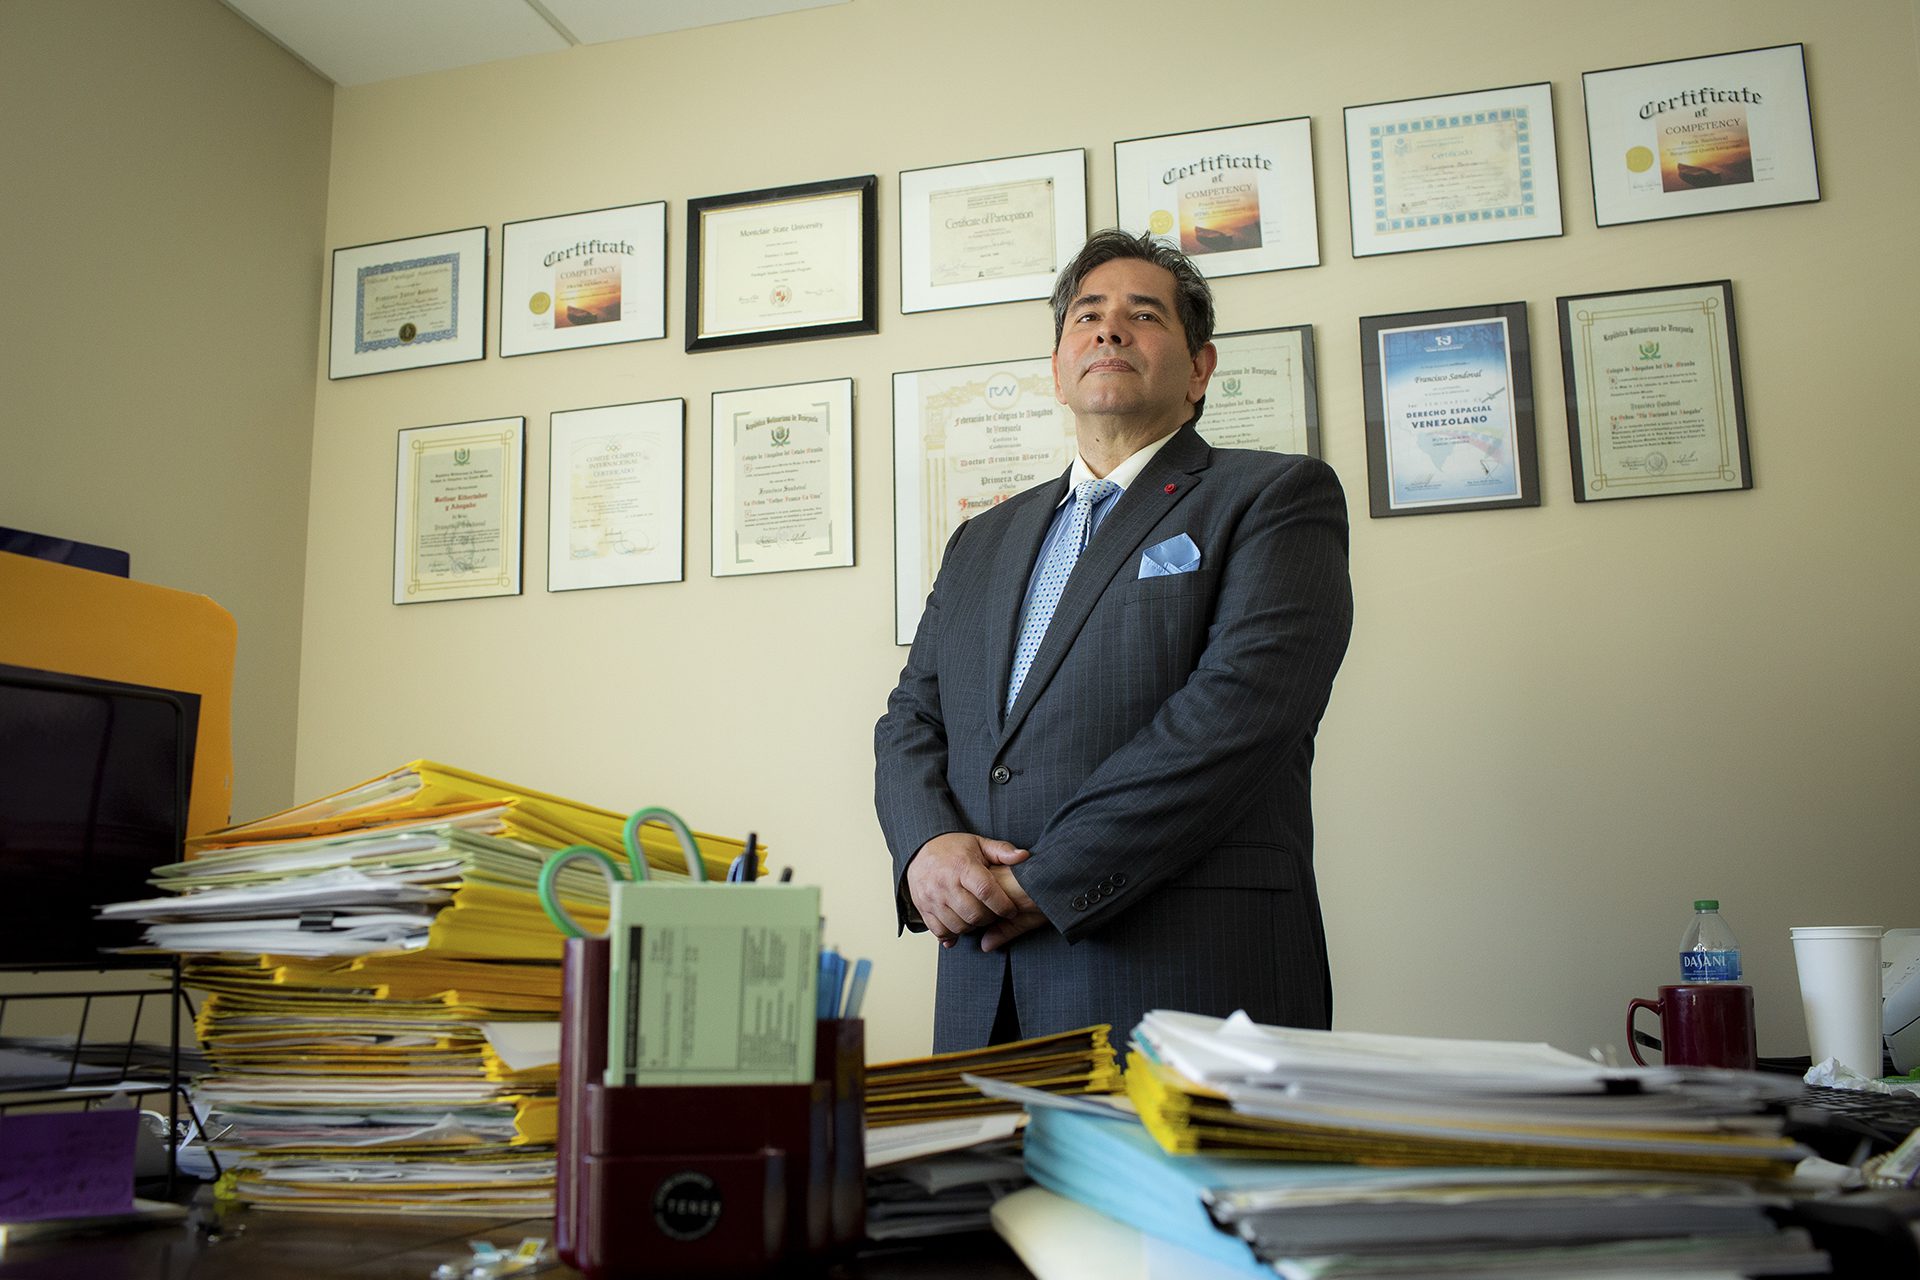 Frank Sandoval, vêtu d'une veste grise et d'une cravate à pois bleus, devant divers prix et certificats encadrés dans son bureau.